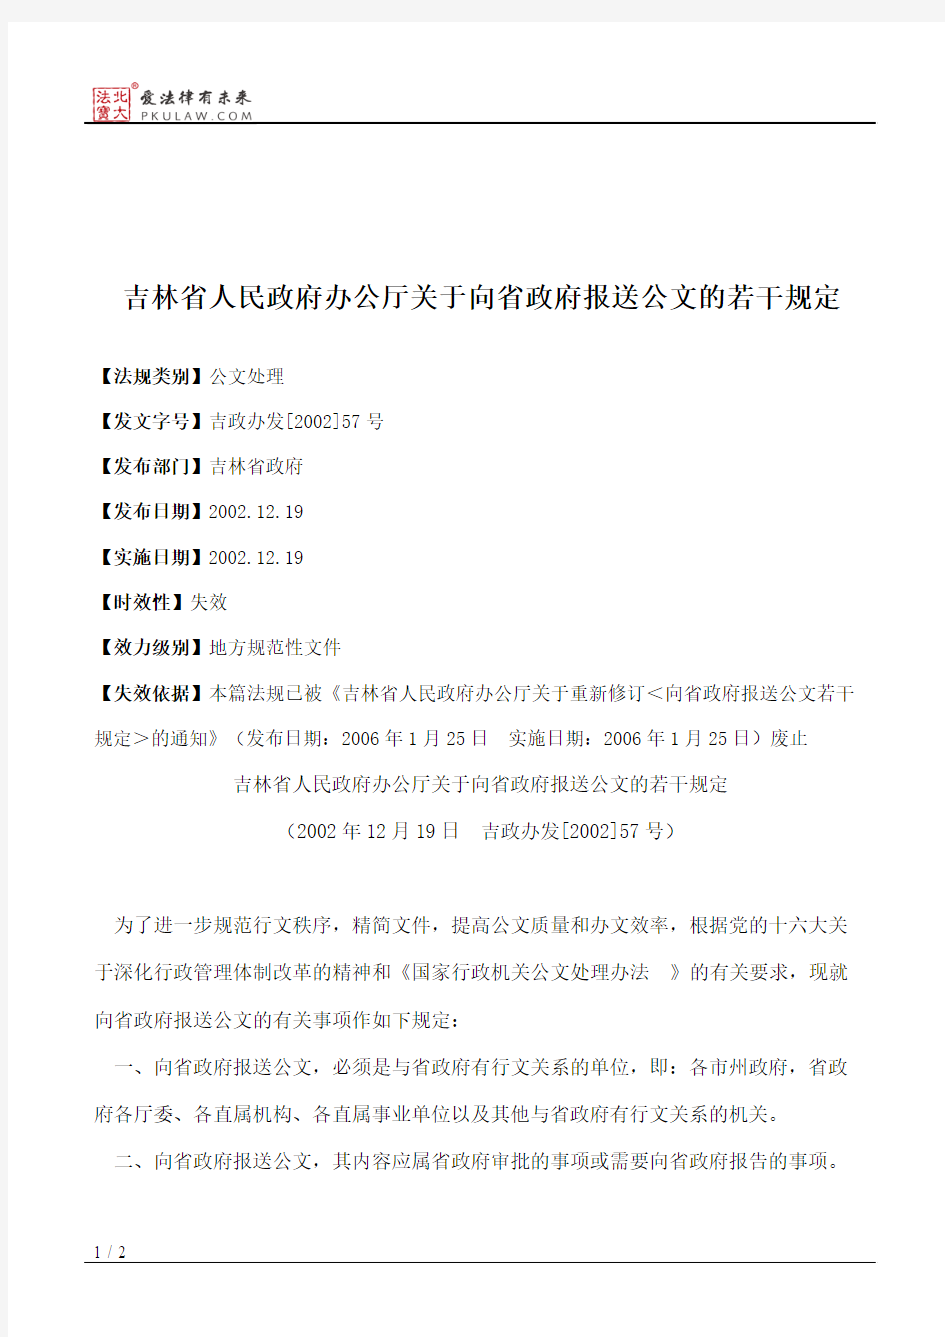 吉林省人民政府办公厅关于向省政府报送公文的若干规定